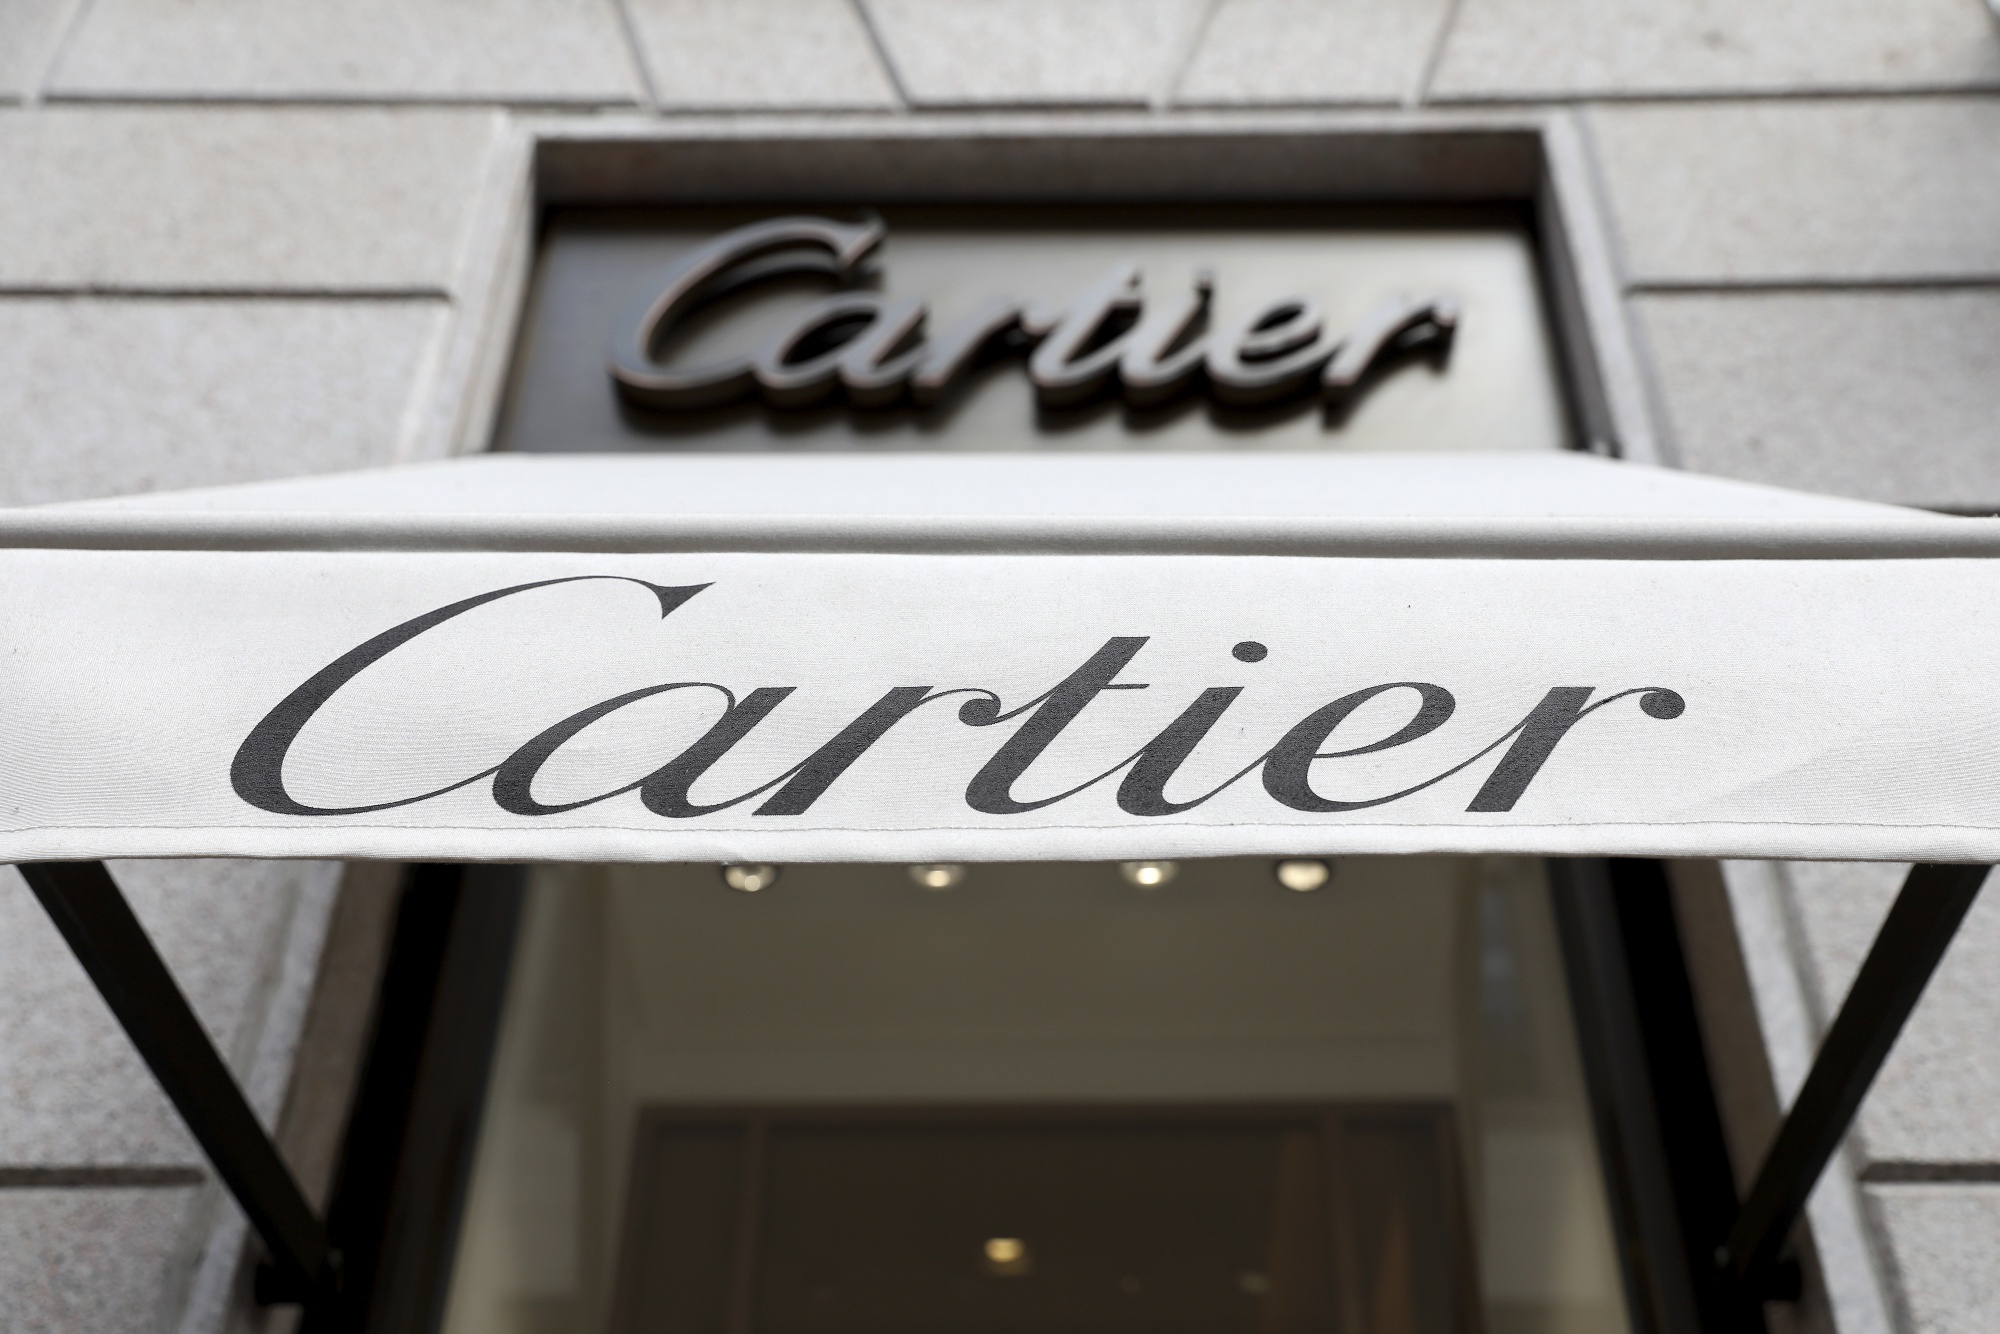 Cartier - Palo Alto, CA - Novawall